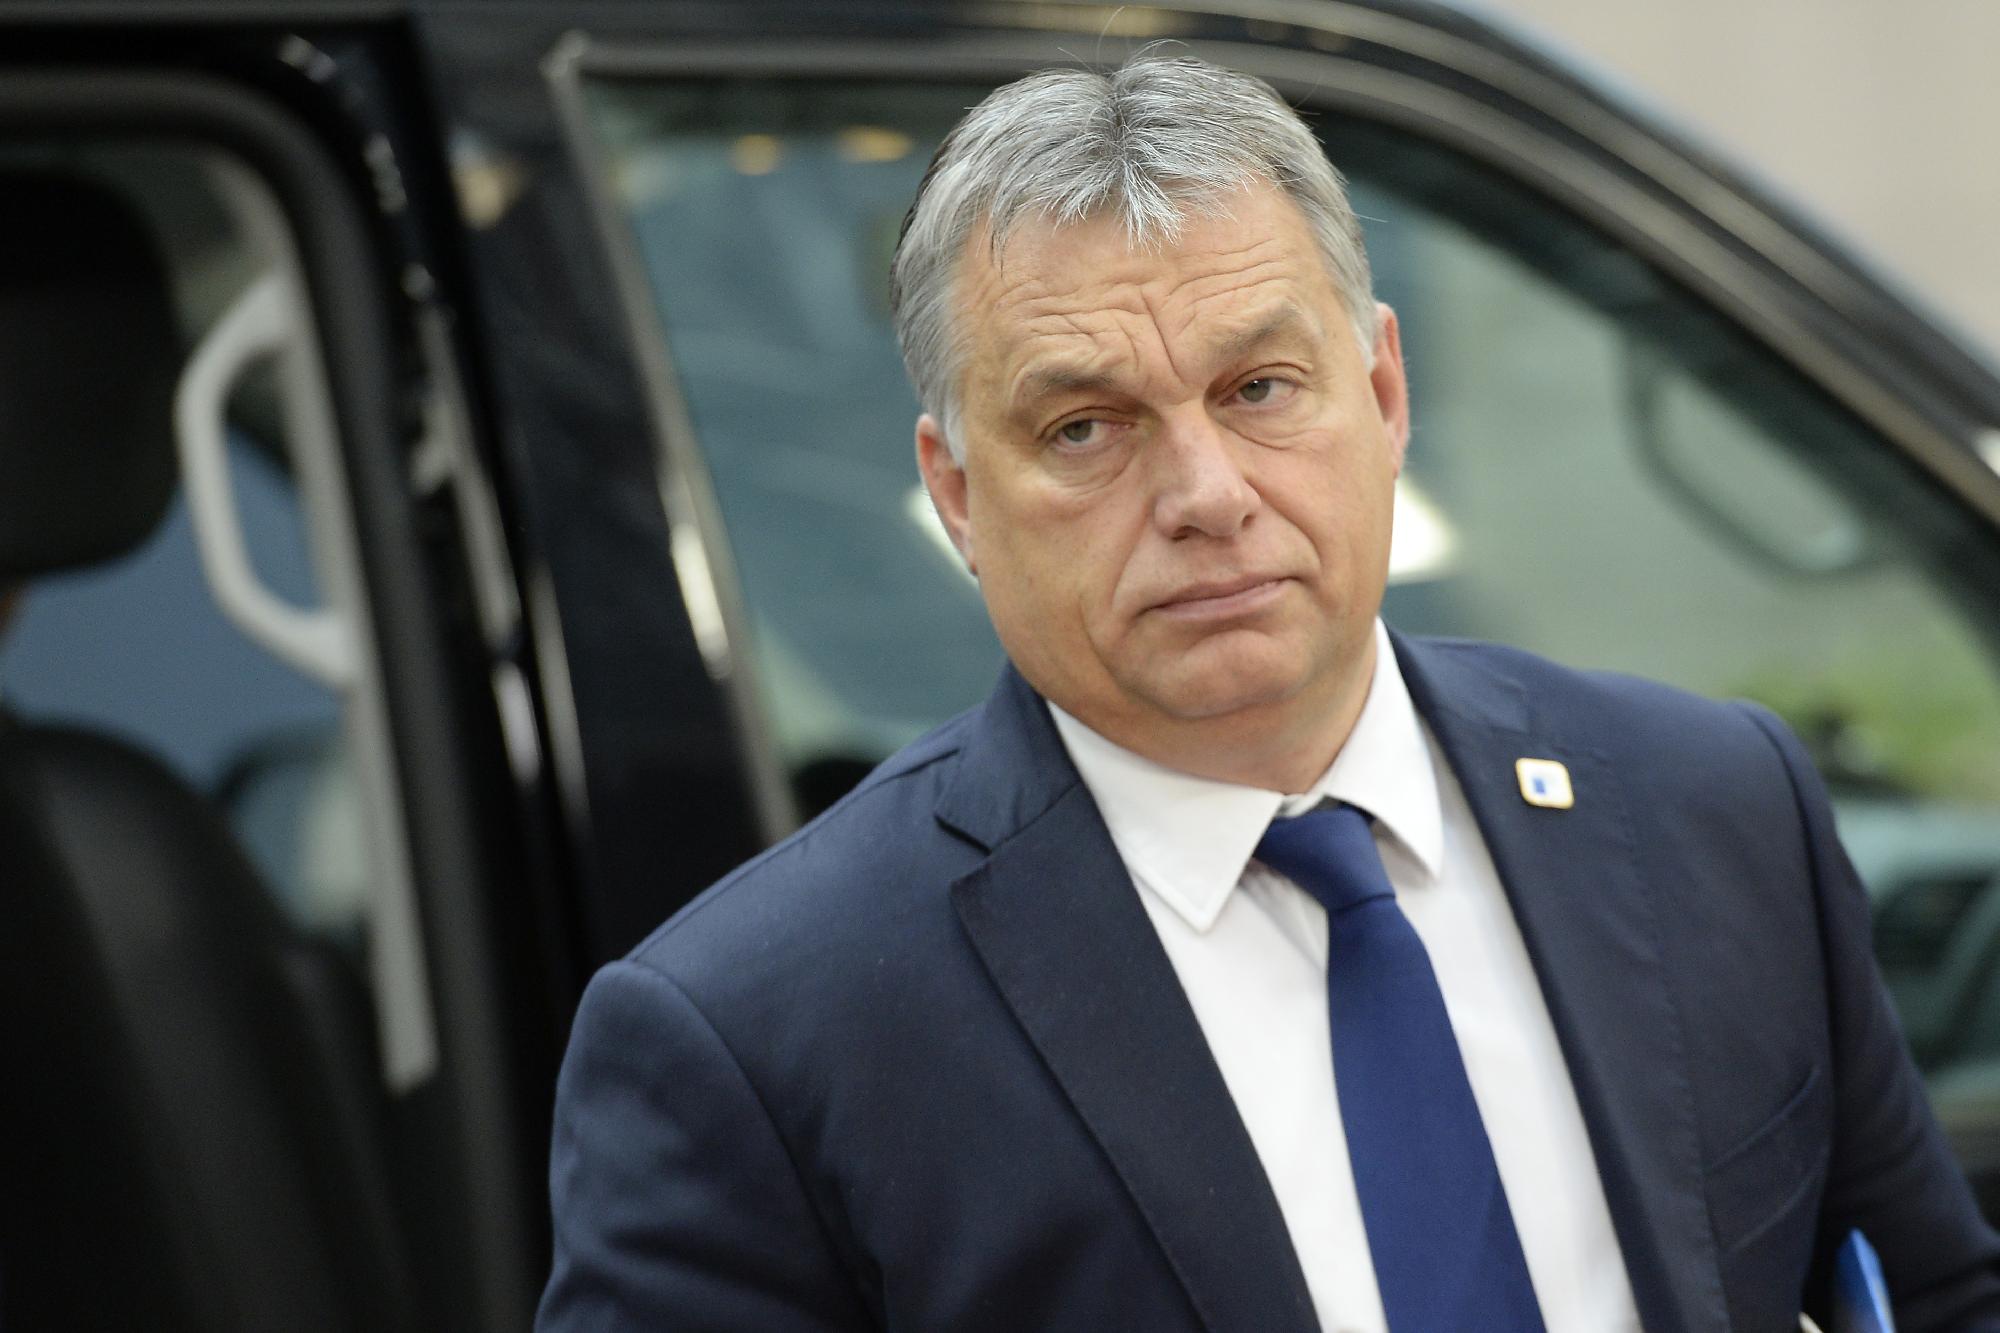 Ostravai vérengzés: Orbán Viktor részvétlevelet küldött